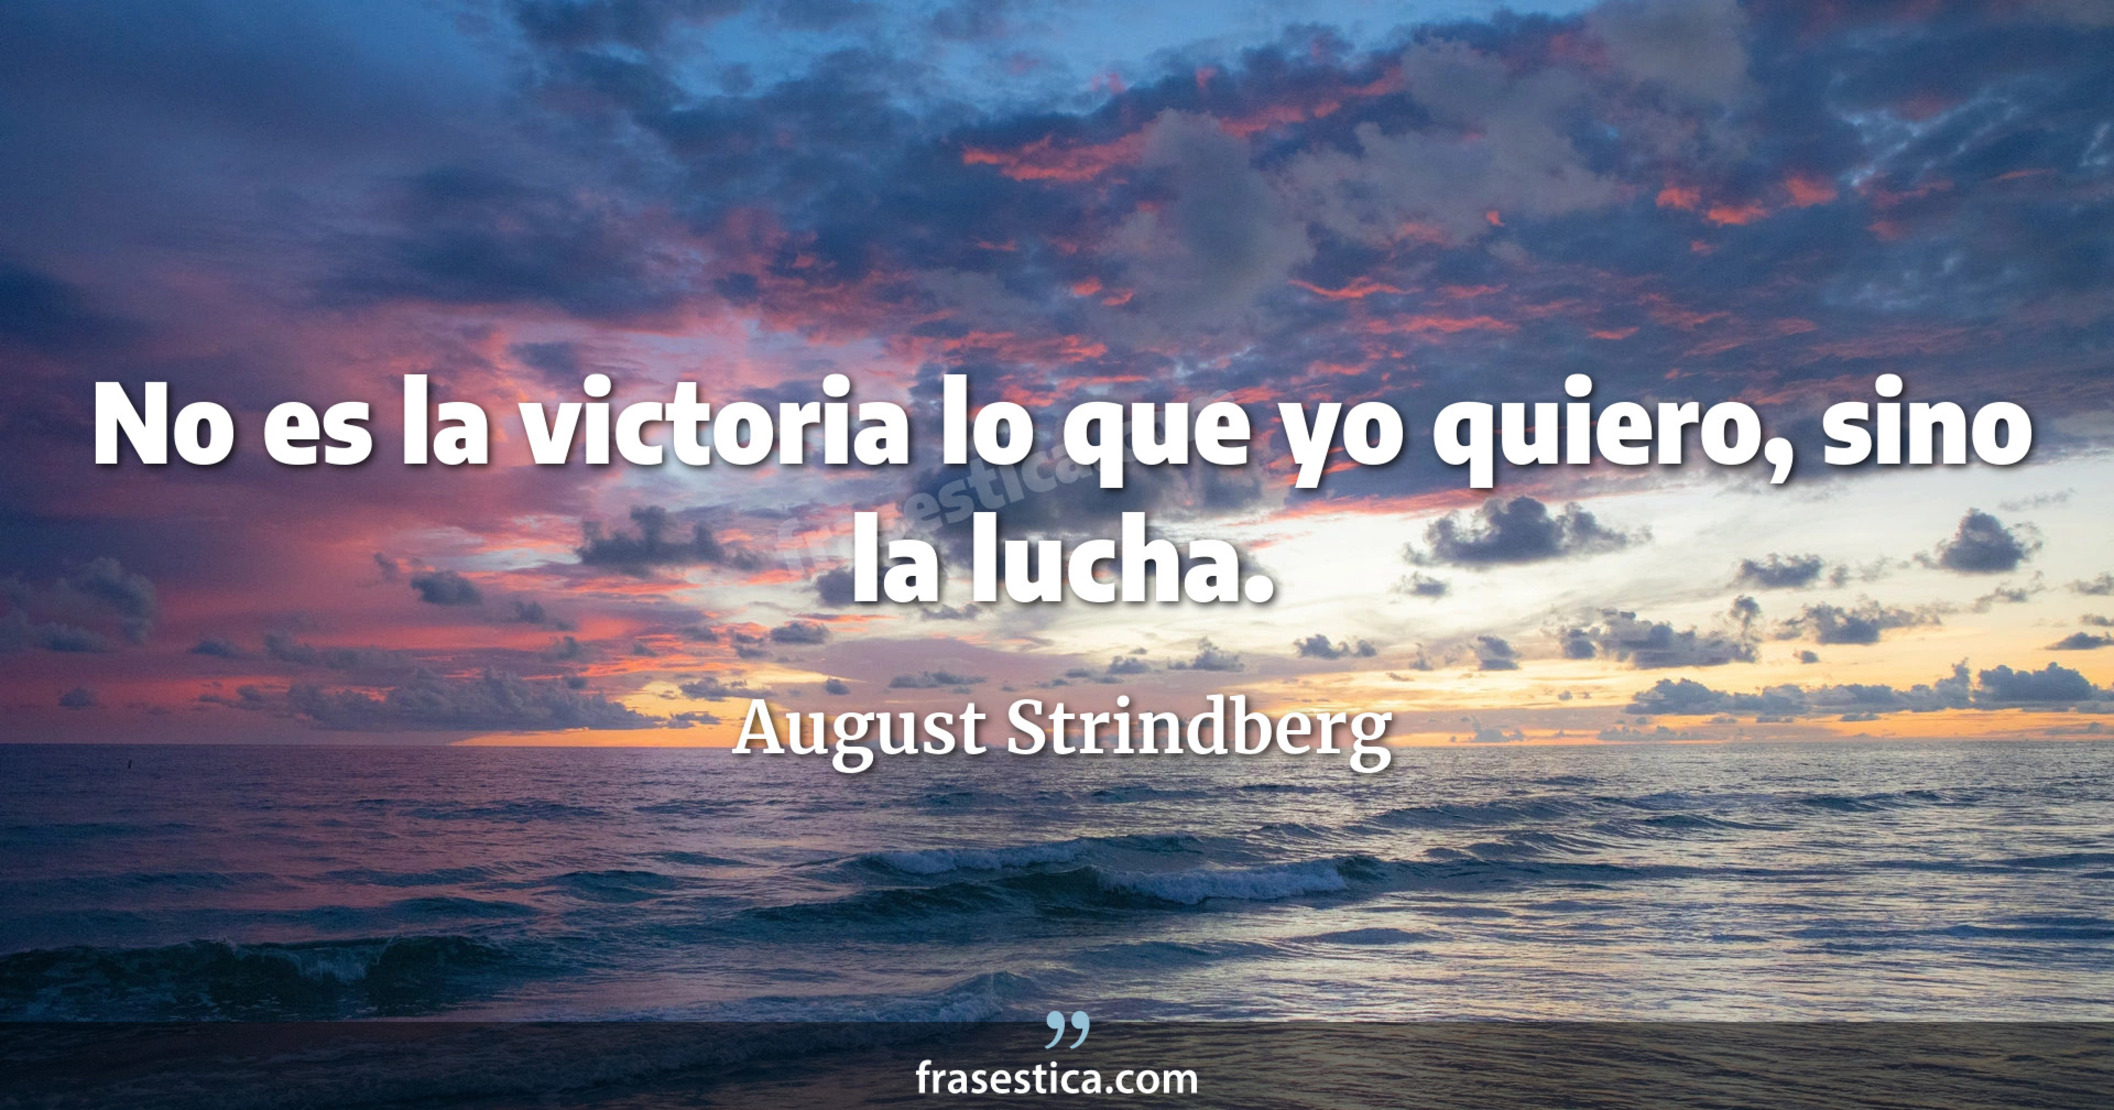 No es la victoria lo que yo quiero, sino la lucha. - August Strindberg